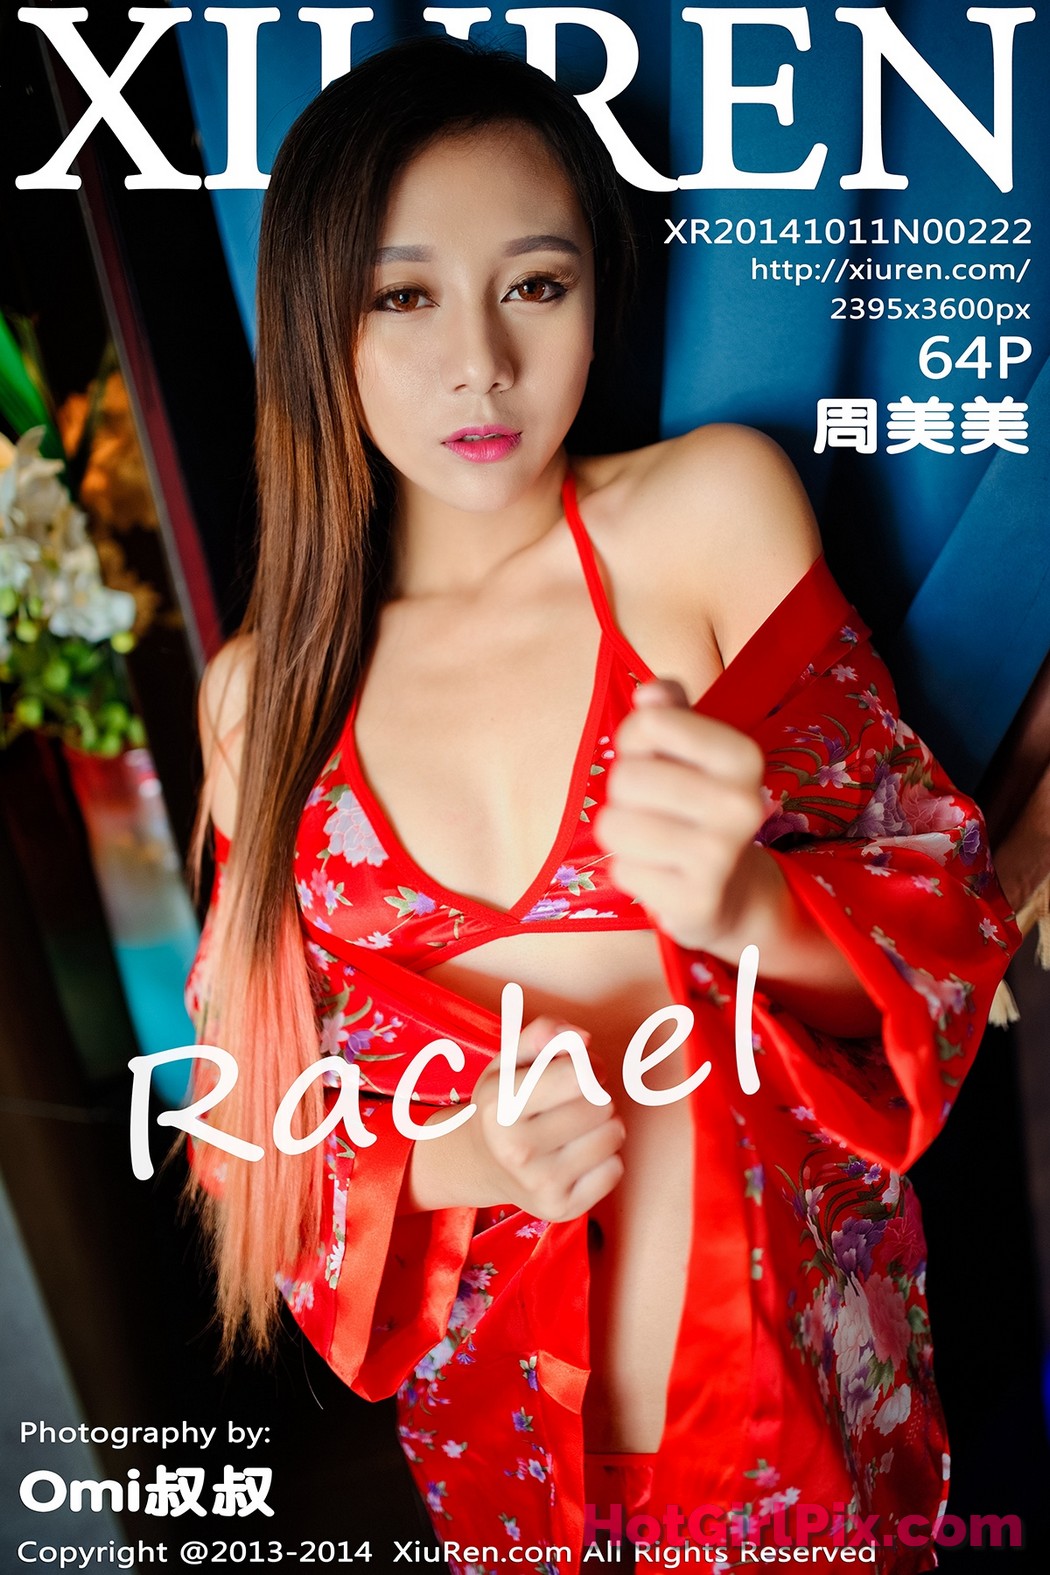 [XIUREN] No.222 Zhou Mei Mei 周美美Rachel Cover Photo